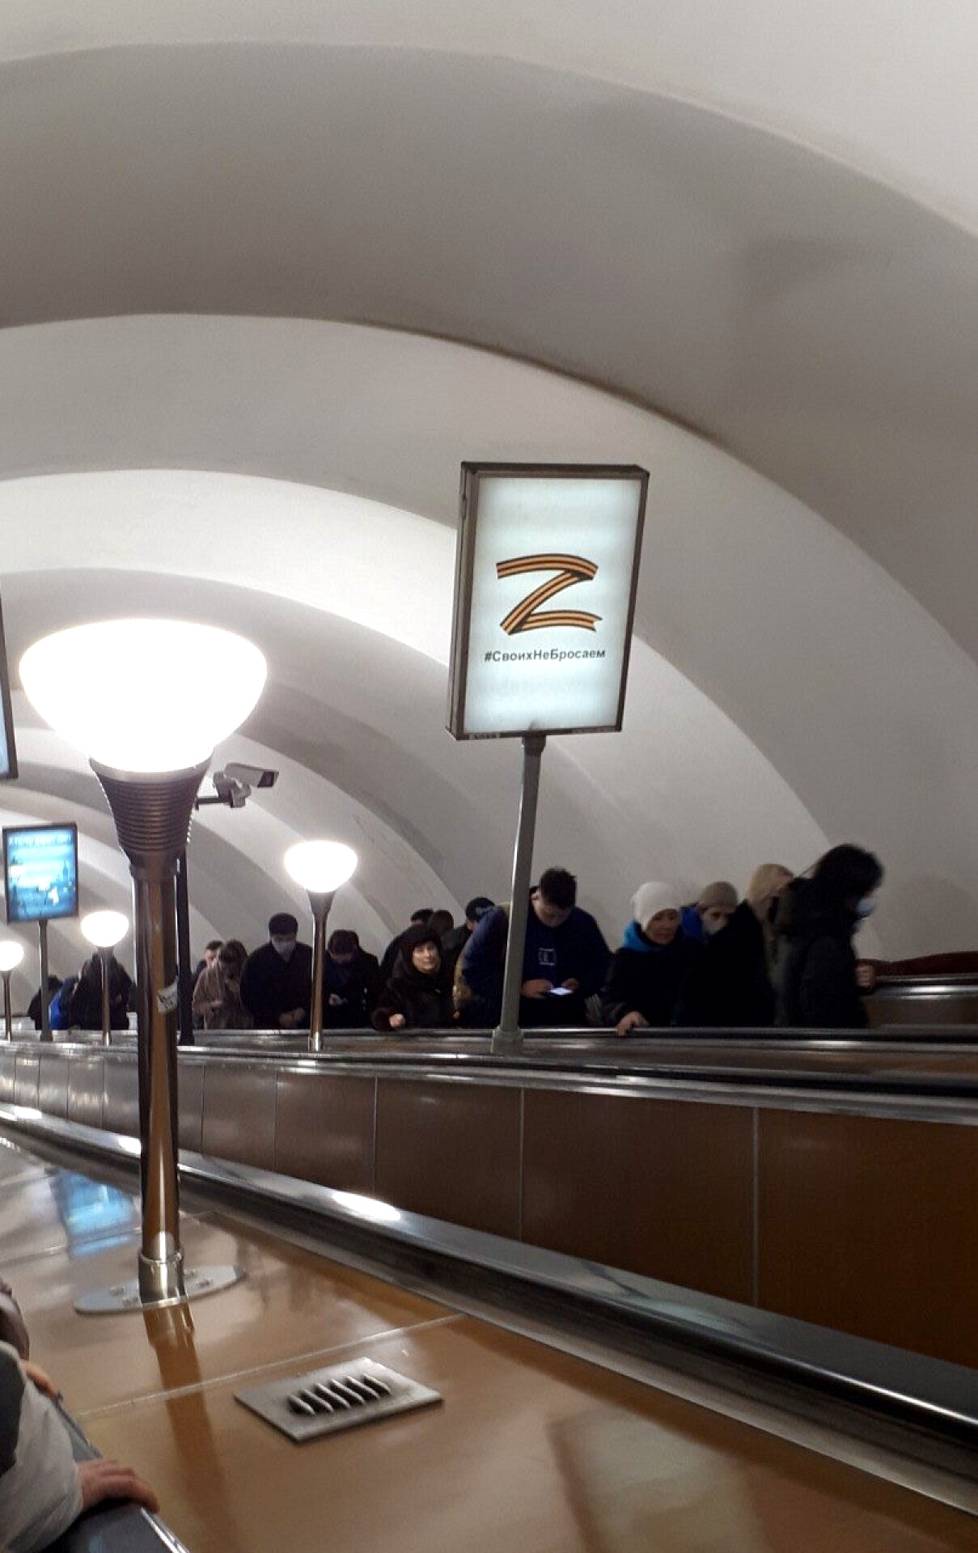 Станция метро ”Гостиный двор".